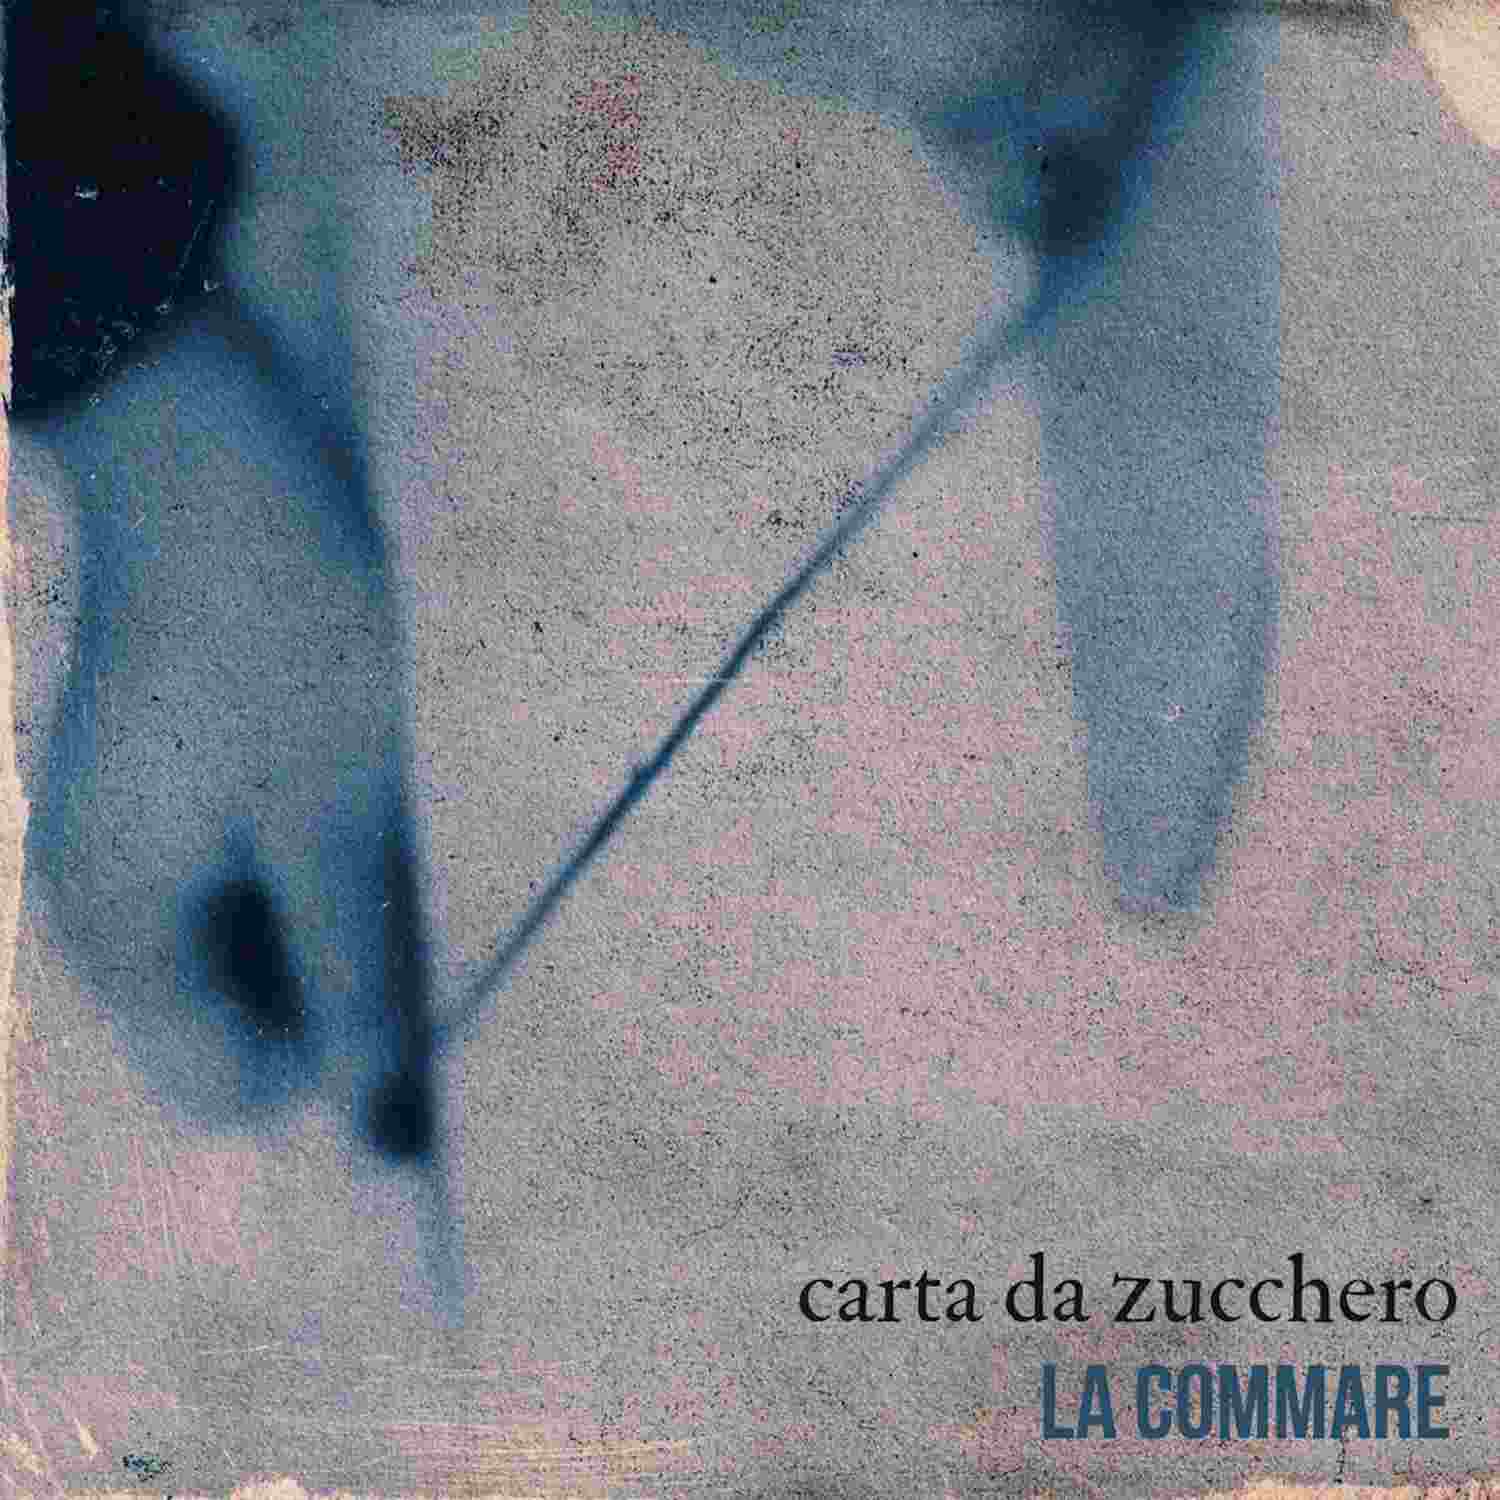 LA COMMARE, “Carta da zucchero” è il nuovo singolo della cantautrice ispirato da Lucio Dalla